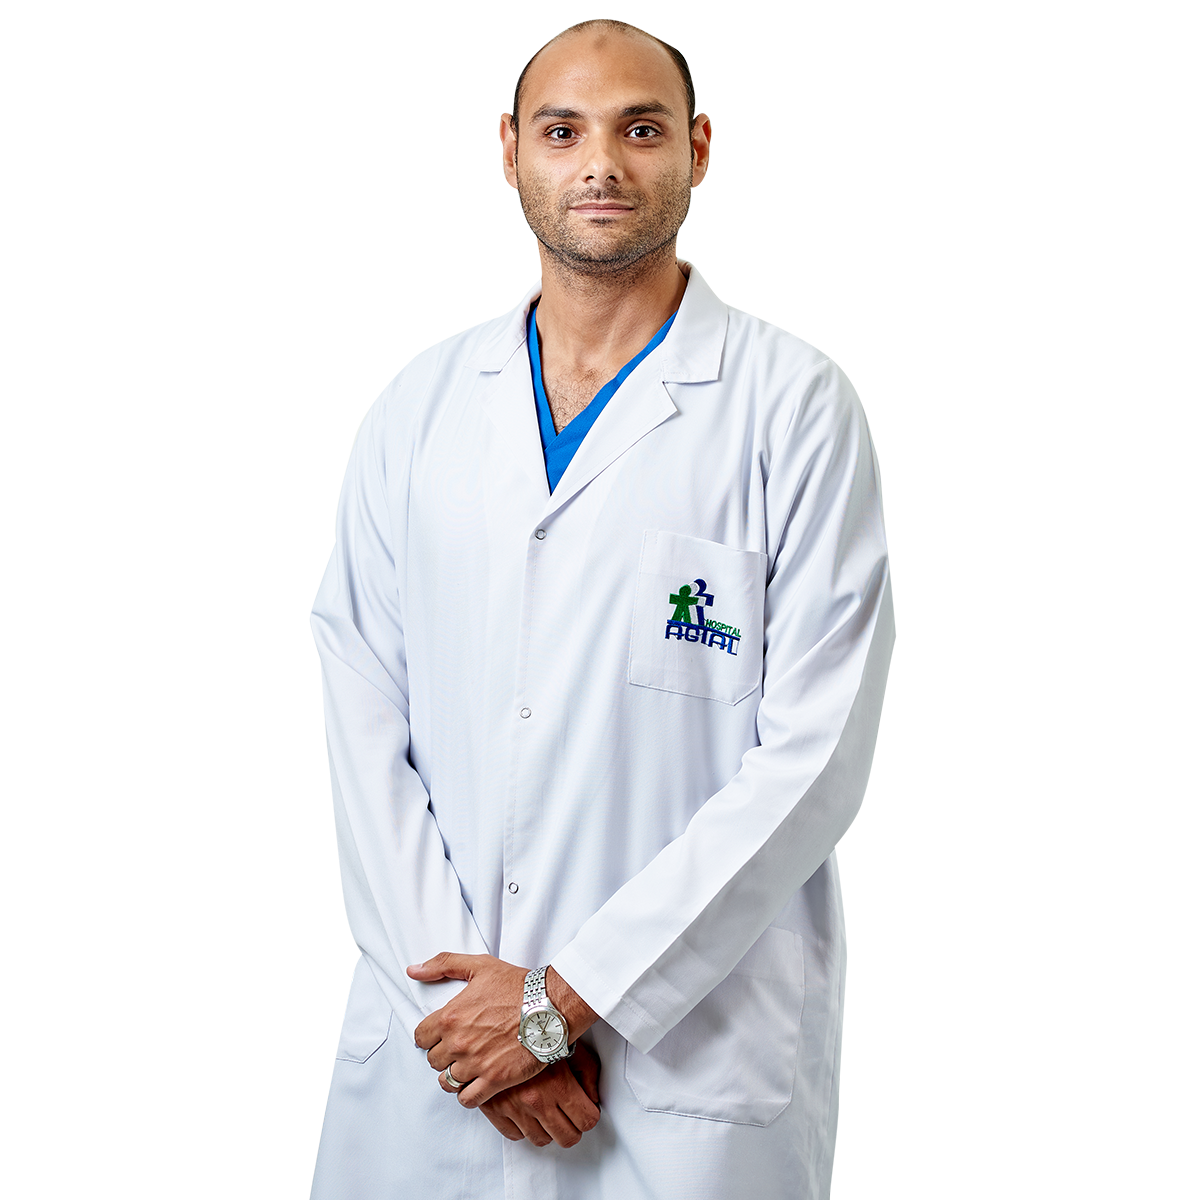 دكتور احمد شوقي اخصائي النساء والتوليد